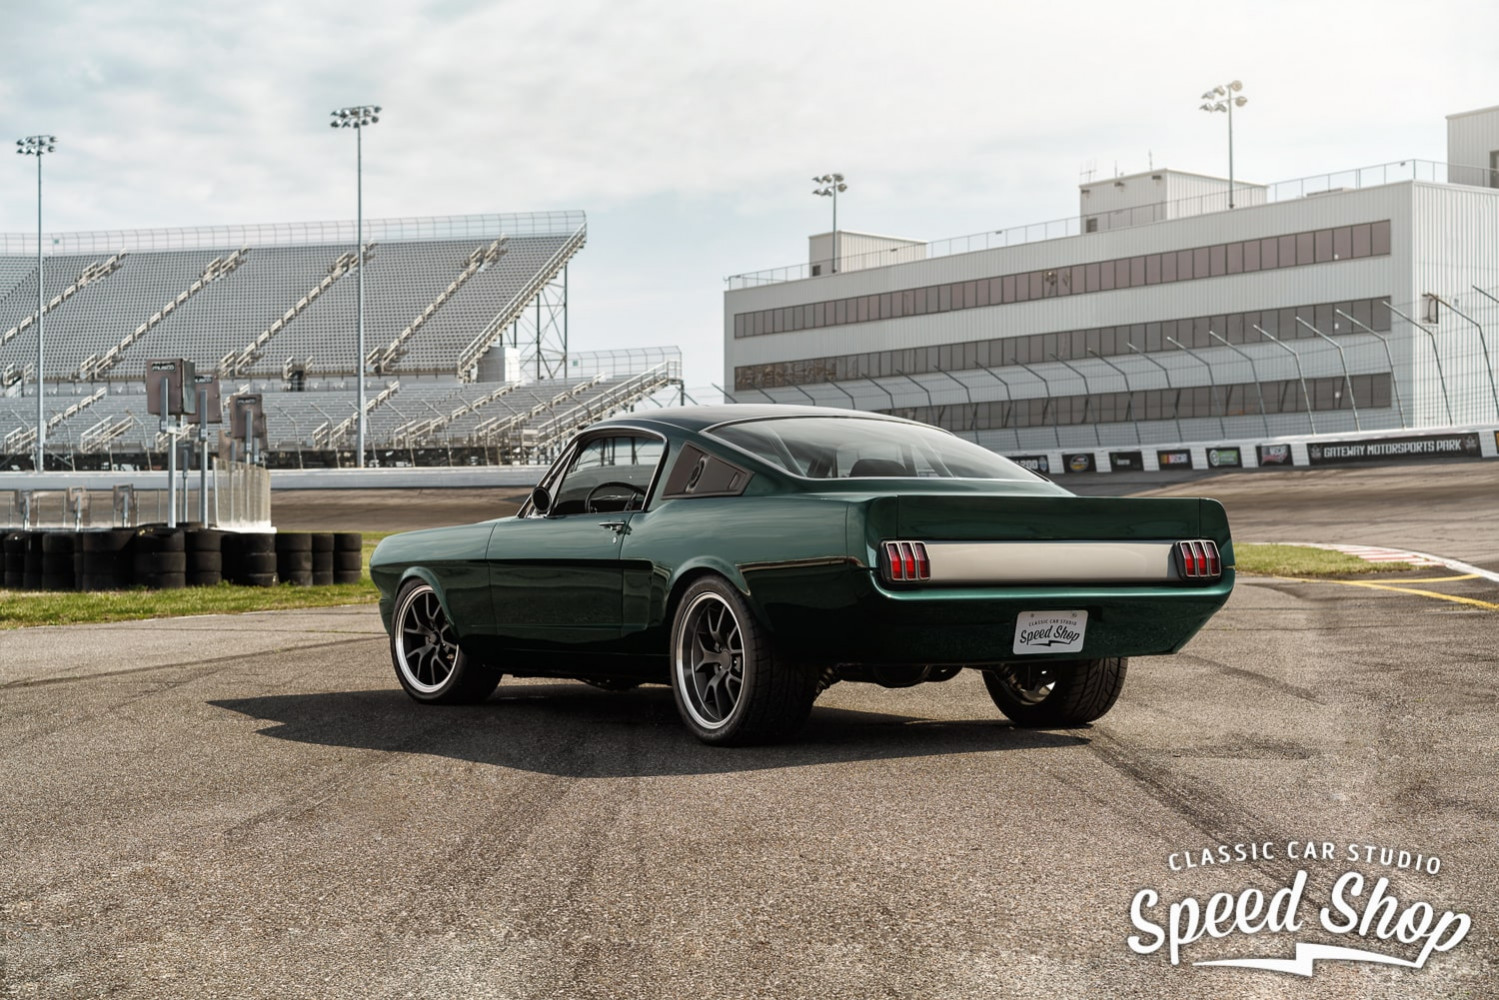 İnanılmaz değişim: 1965 model Mustang restorasyonu